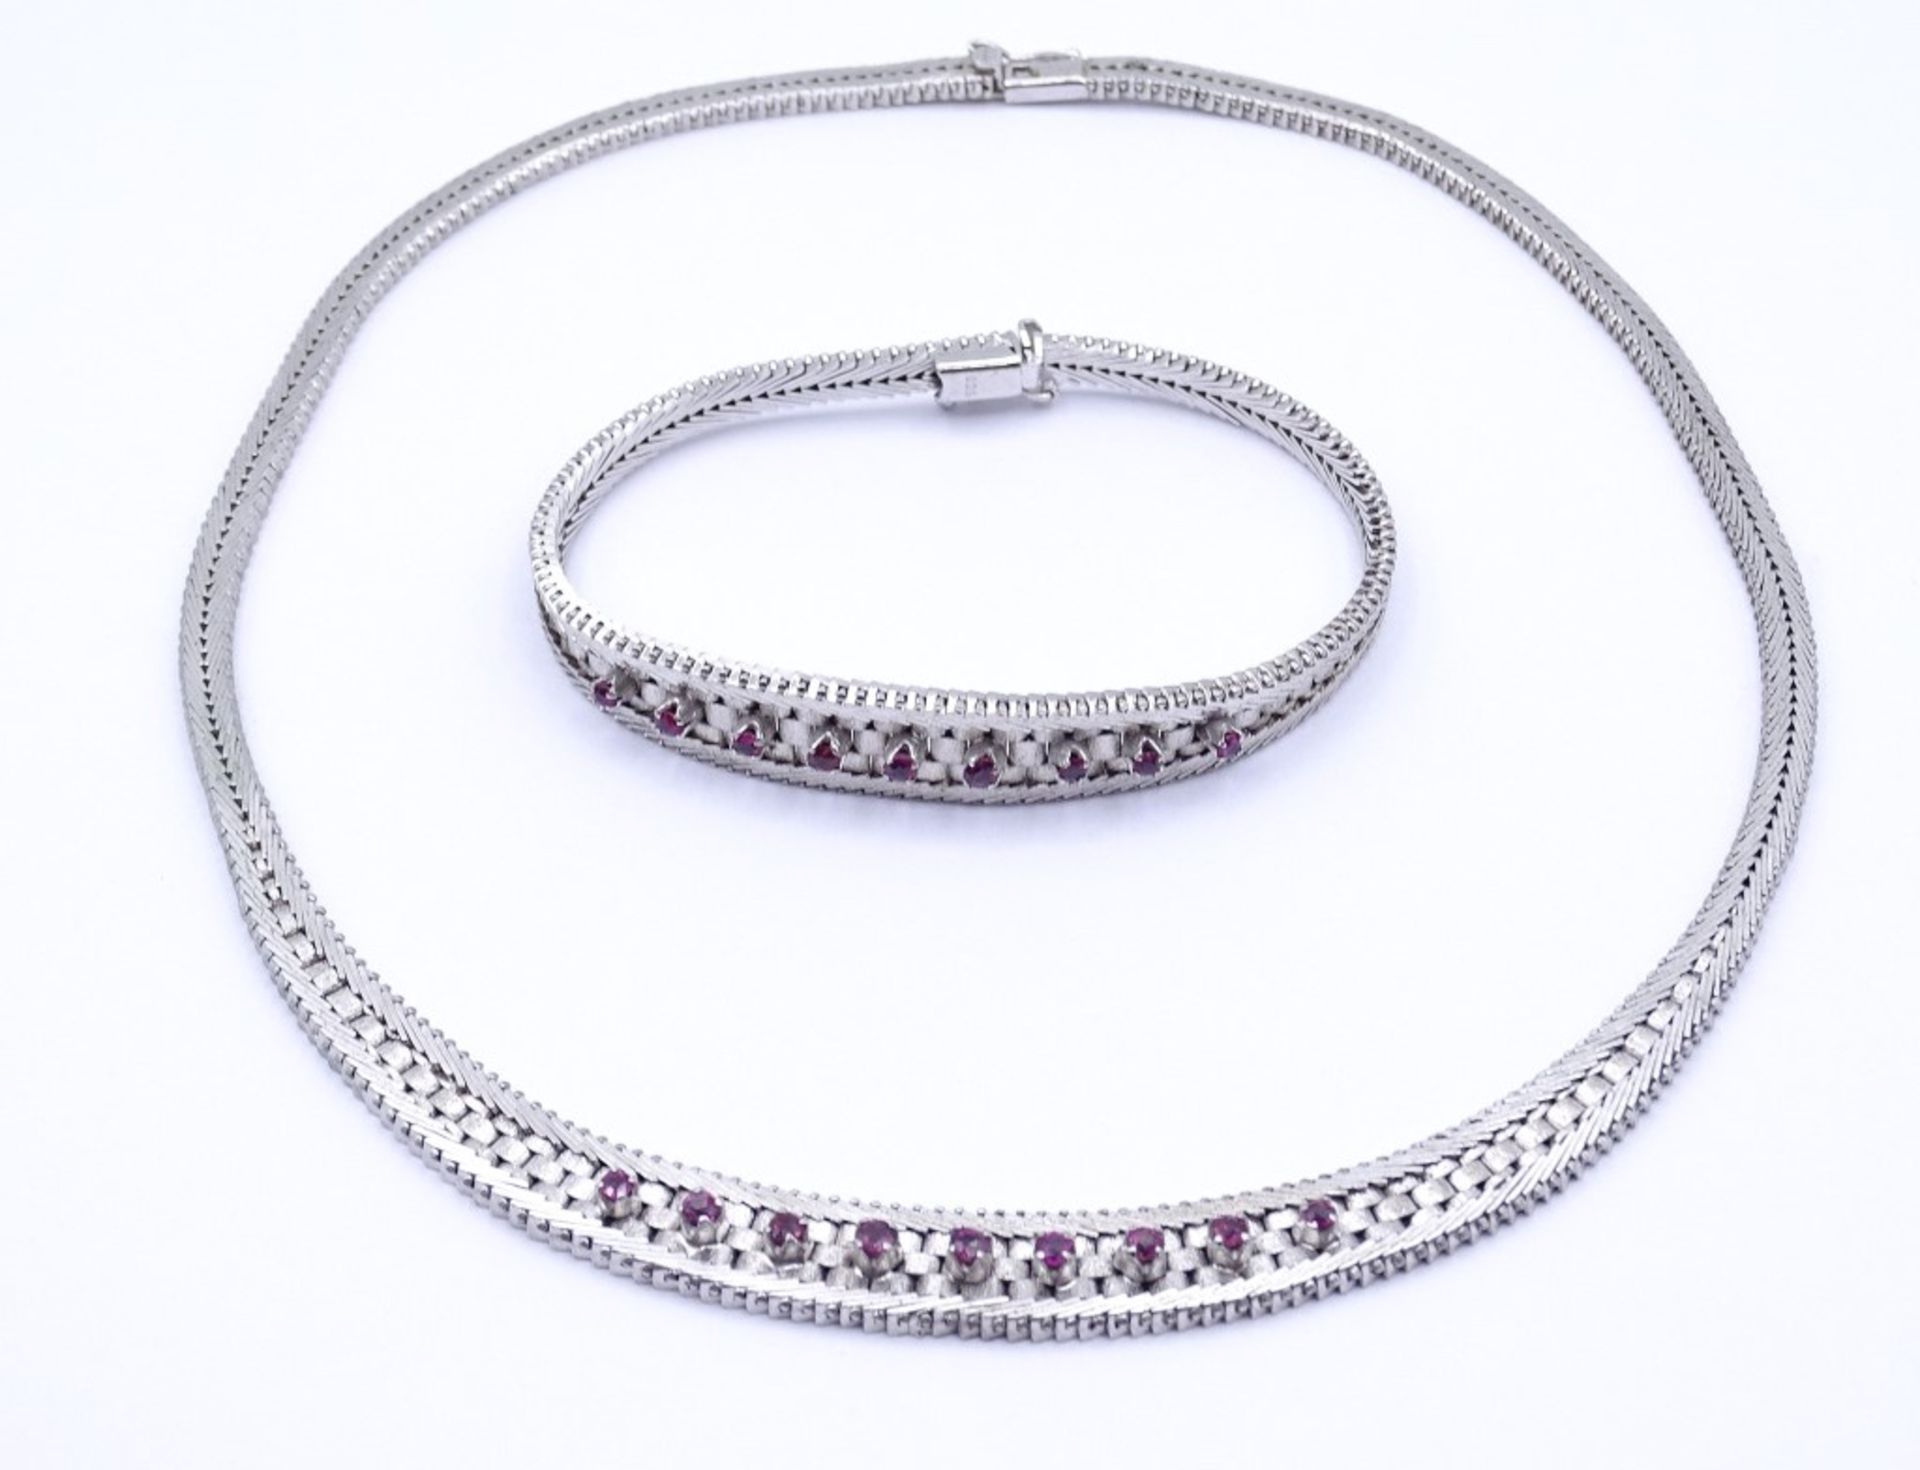 Schmuckset mit Rubinen, Silber 0.925, Halskette und Armband, zus.53,5g.